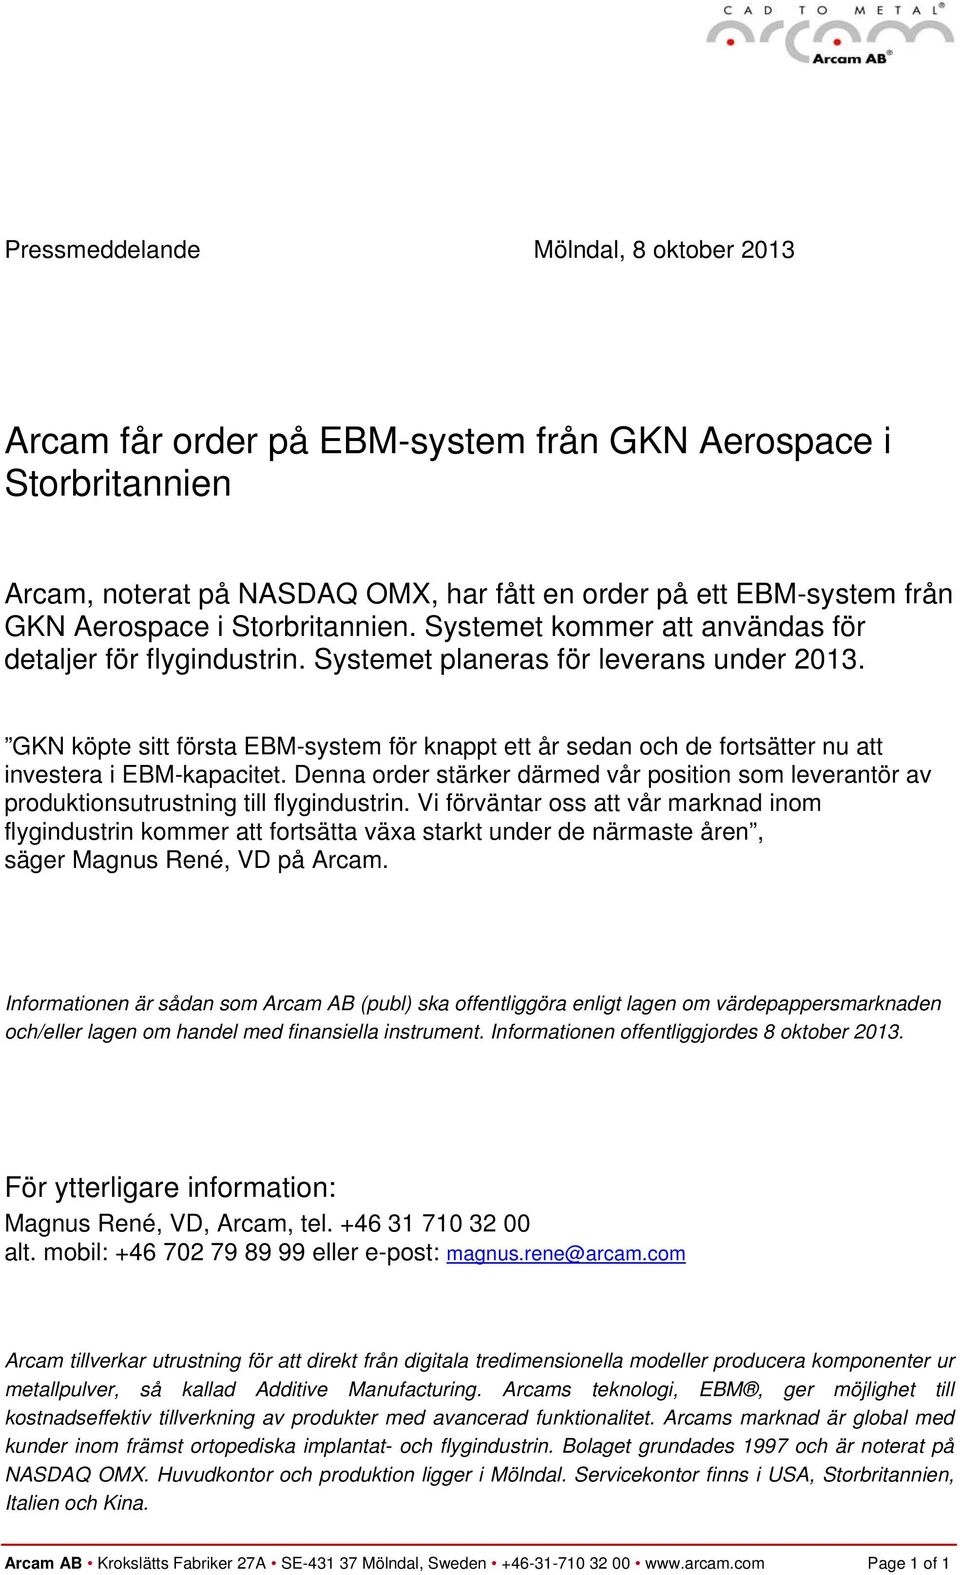 GKN köpte sitt första EBM-system för knappt ett år sedan och de fortsätter nu att investera i EBM-kapacitet.